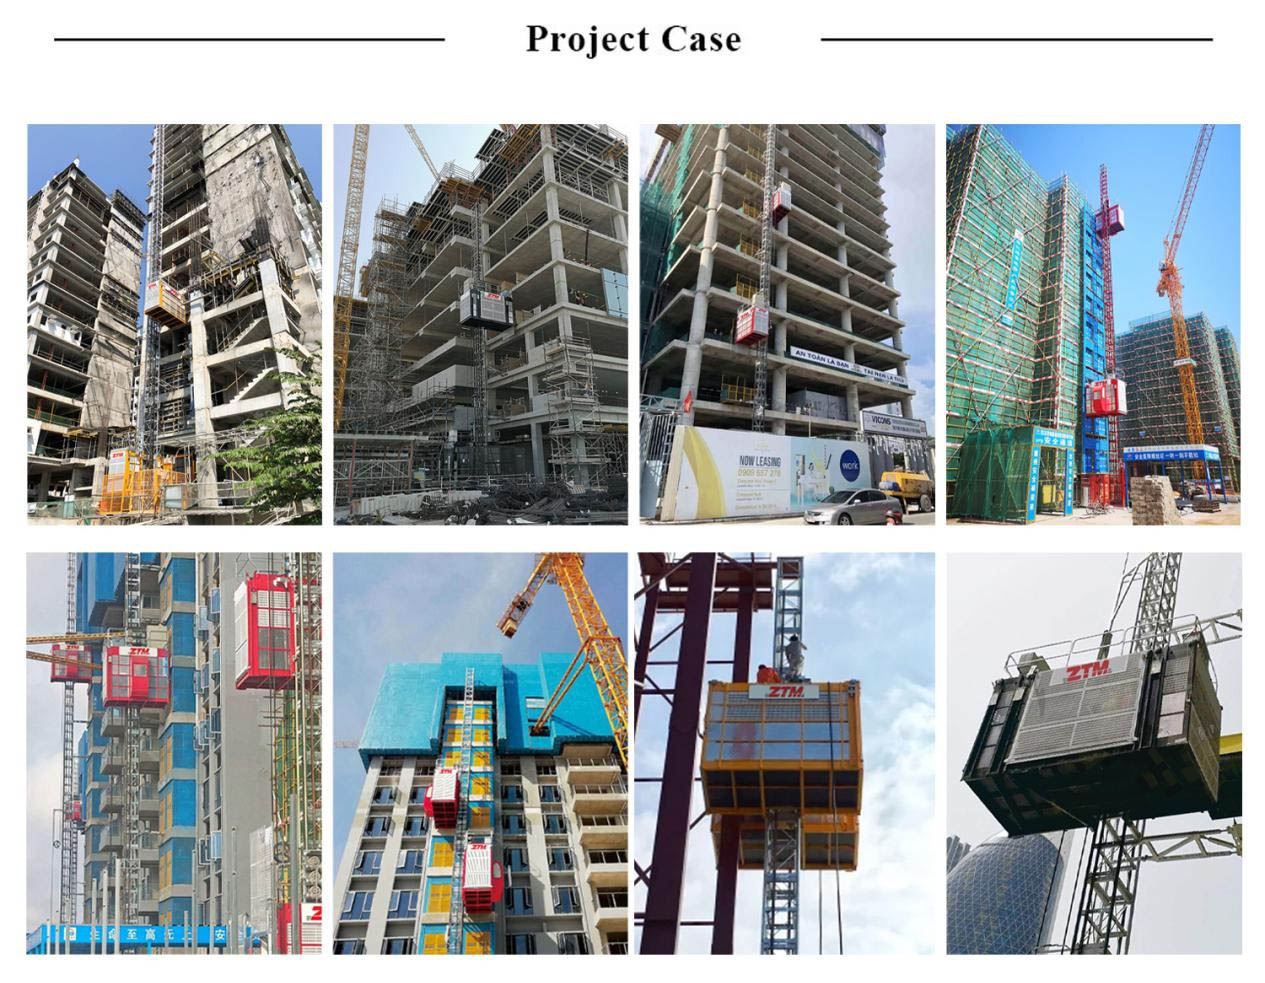 9.ZTM construction hoist export project